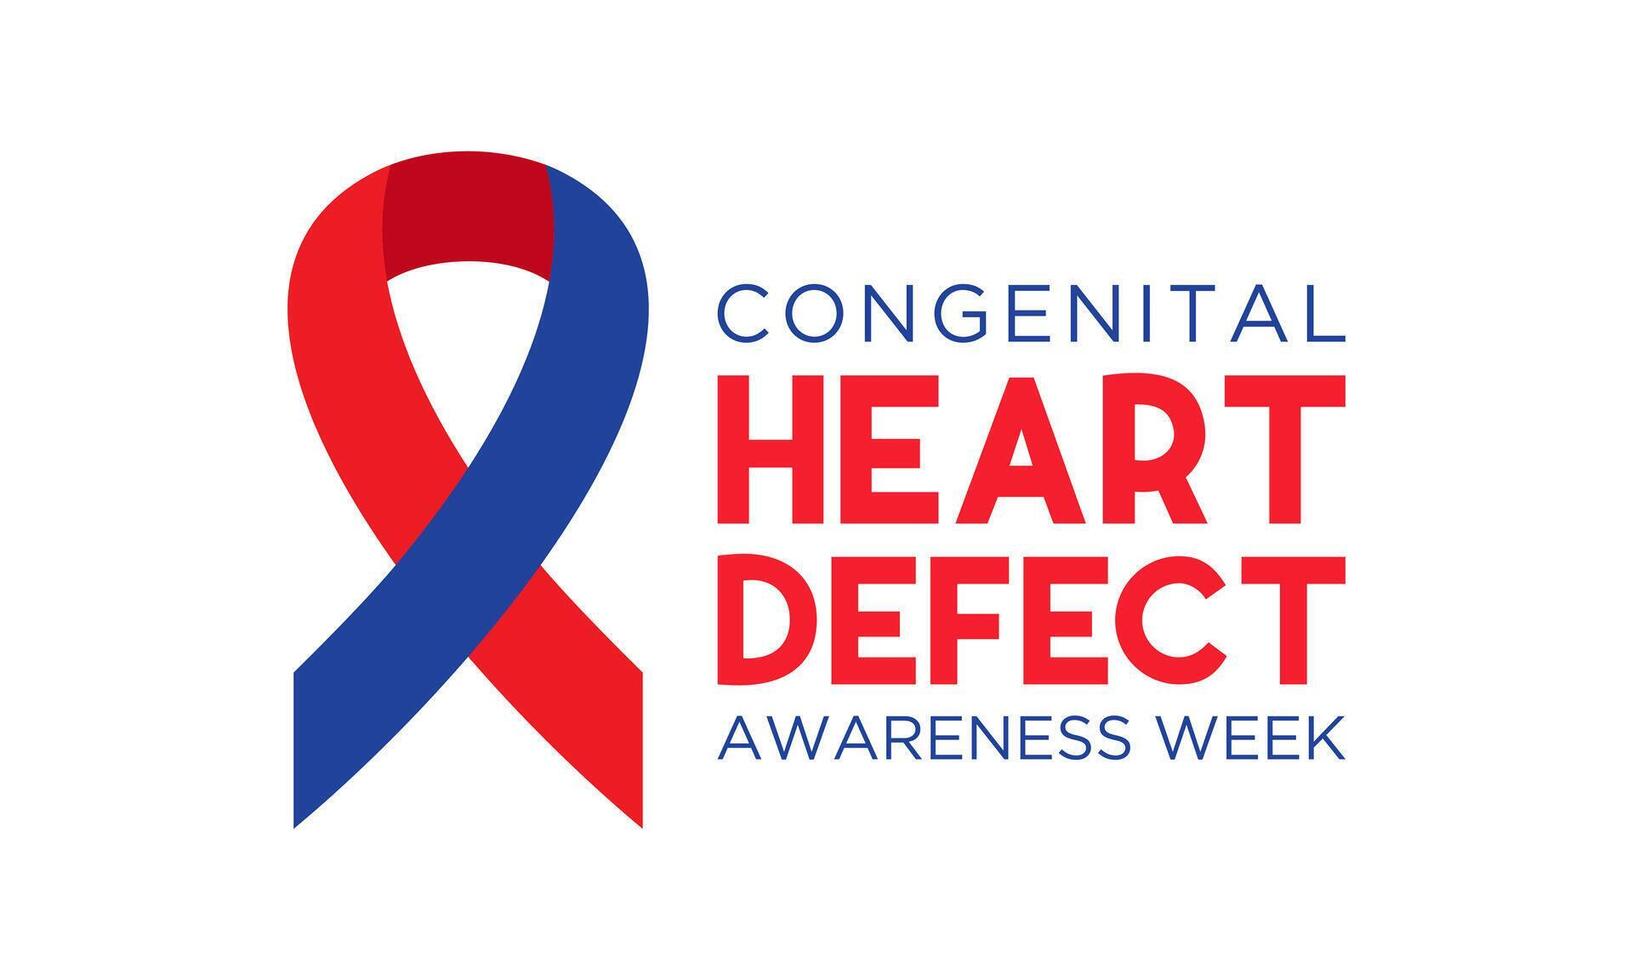 medfödd hjärta defekt medvetenhet vecka observerats varje år i under februari 7 till 14. hälsa och medicinsk medvetenhet vektor mall för baner, affisch och bakgrund design. vektor illustration.